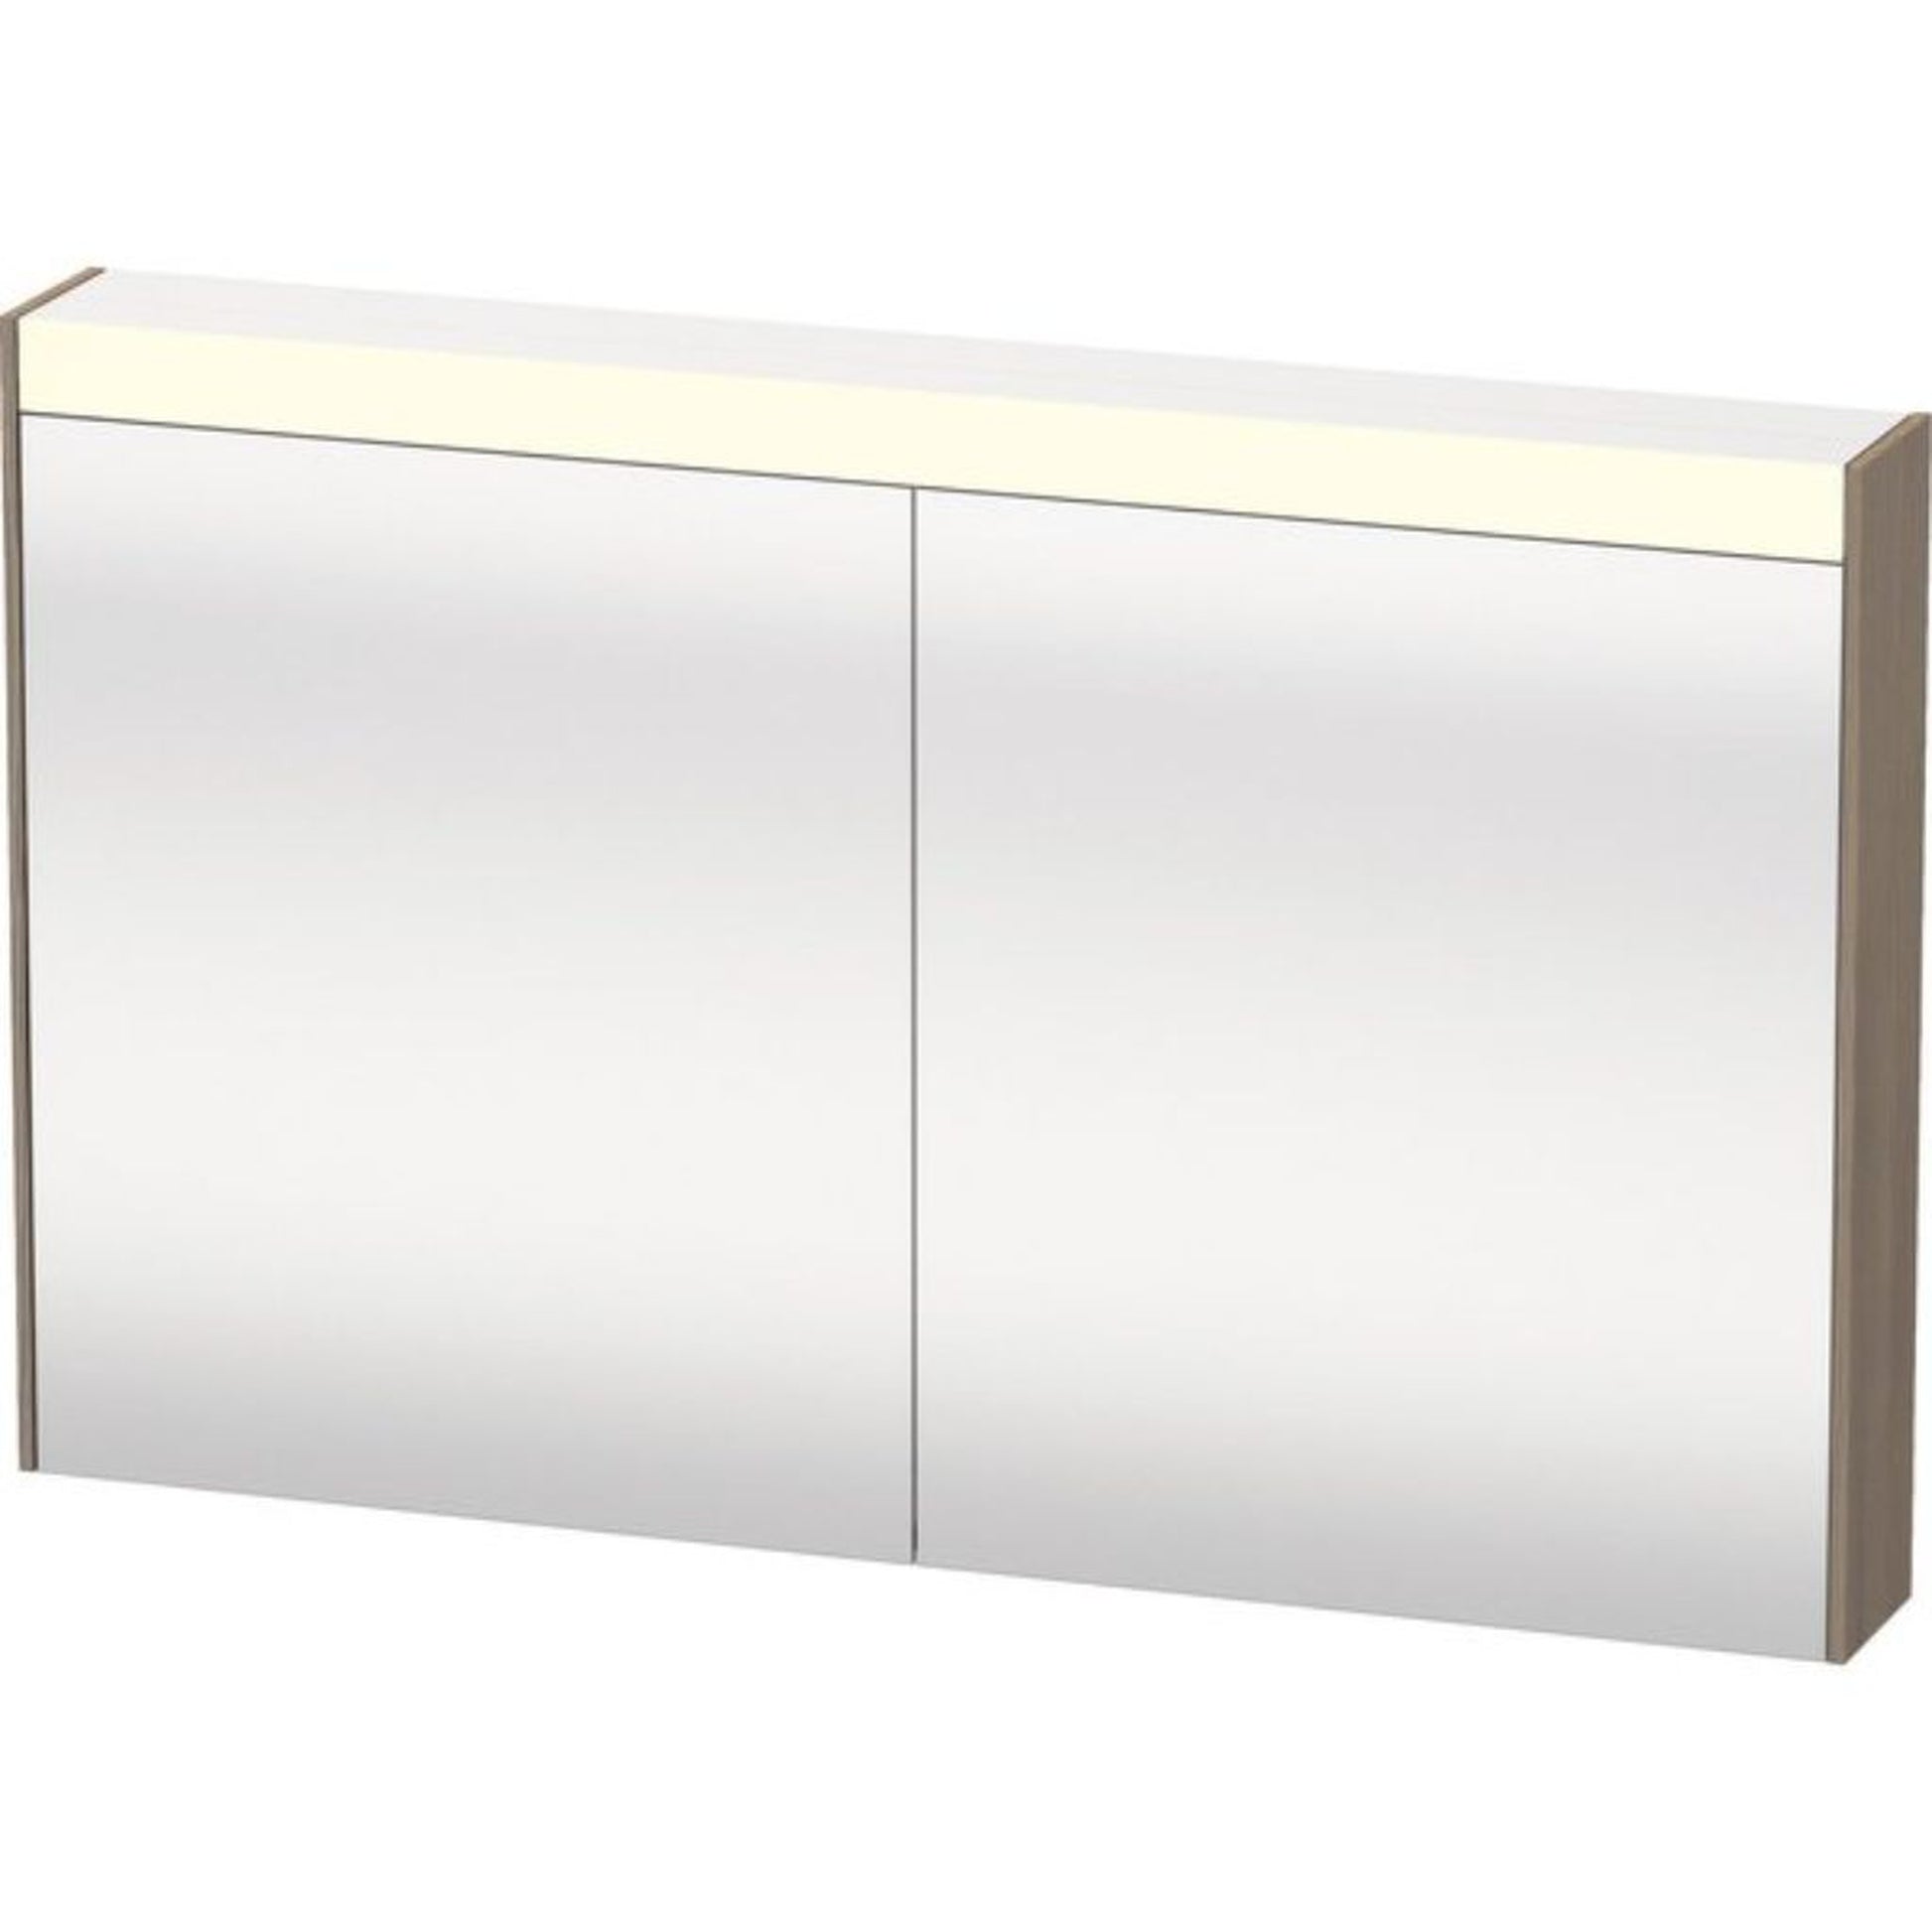 Duravit Brioso 40" x 30" x 6" Mirror Cabinet With Lighting Oak Terra